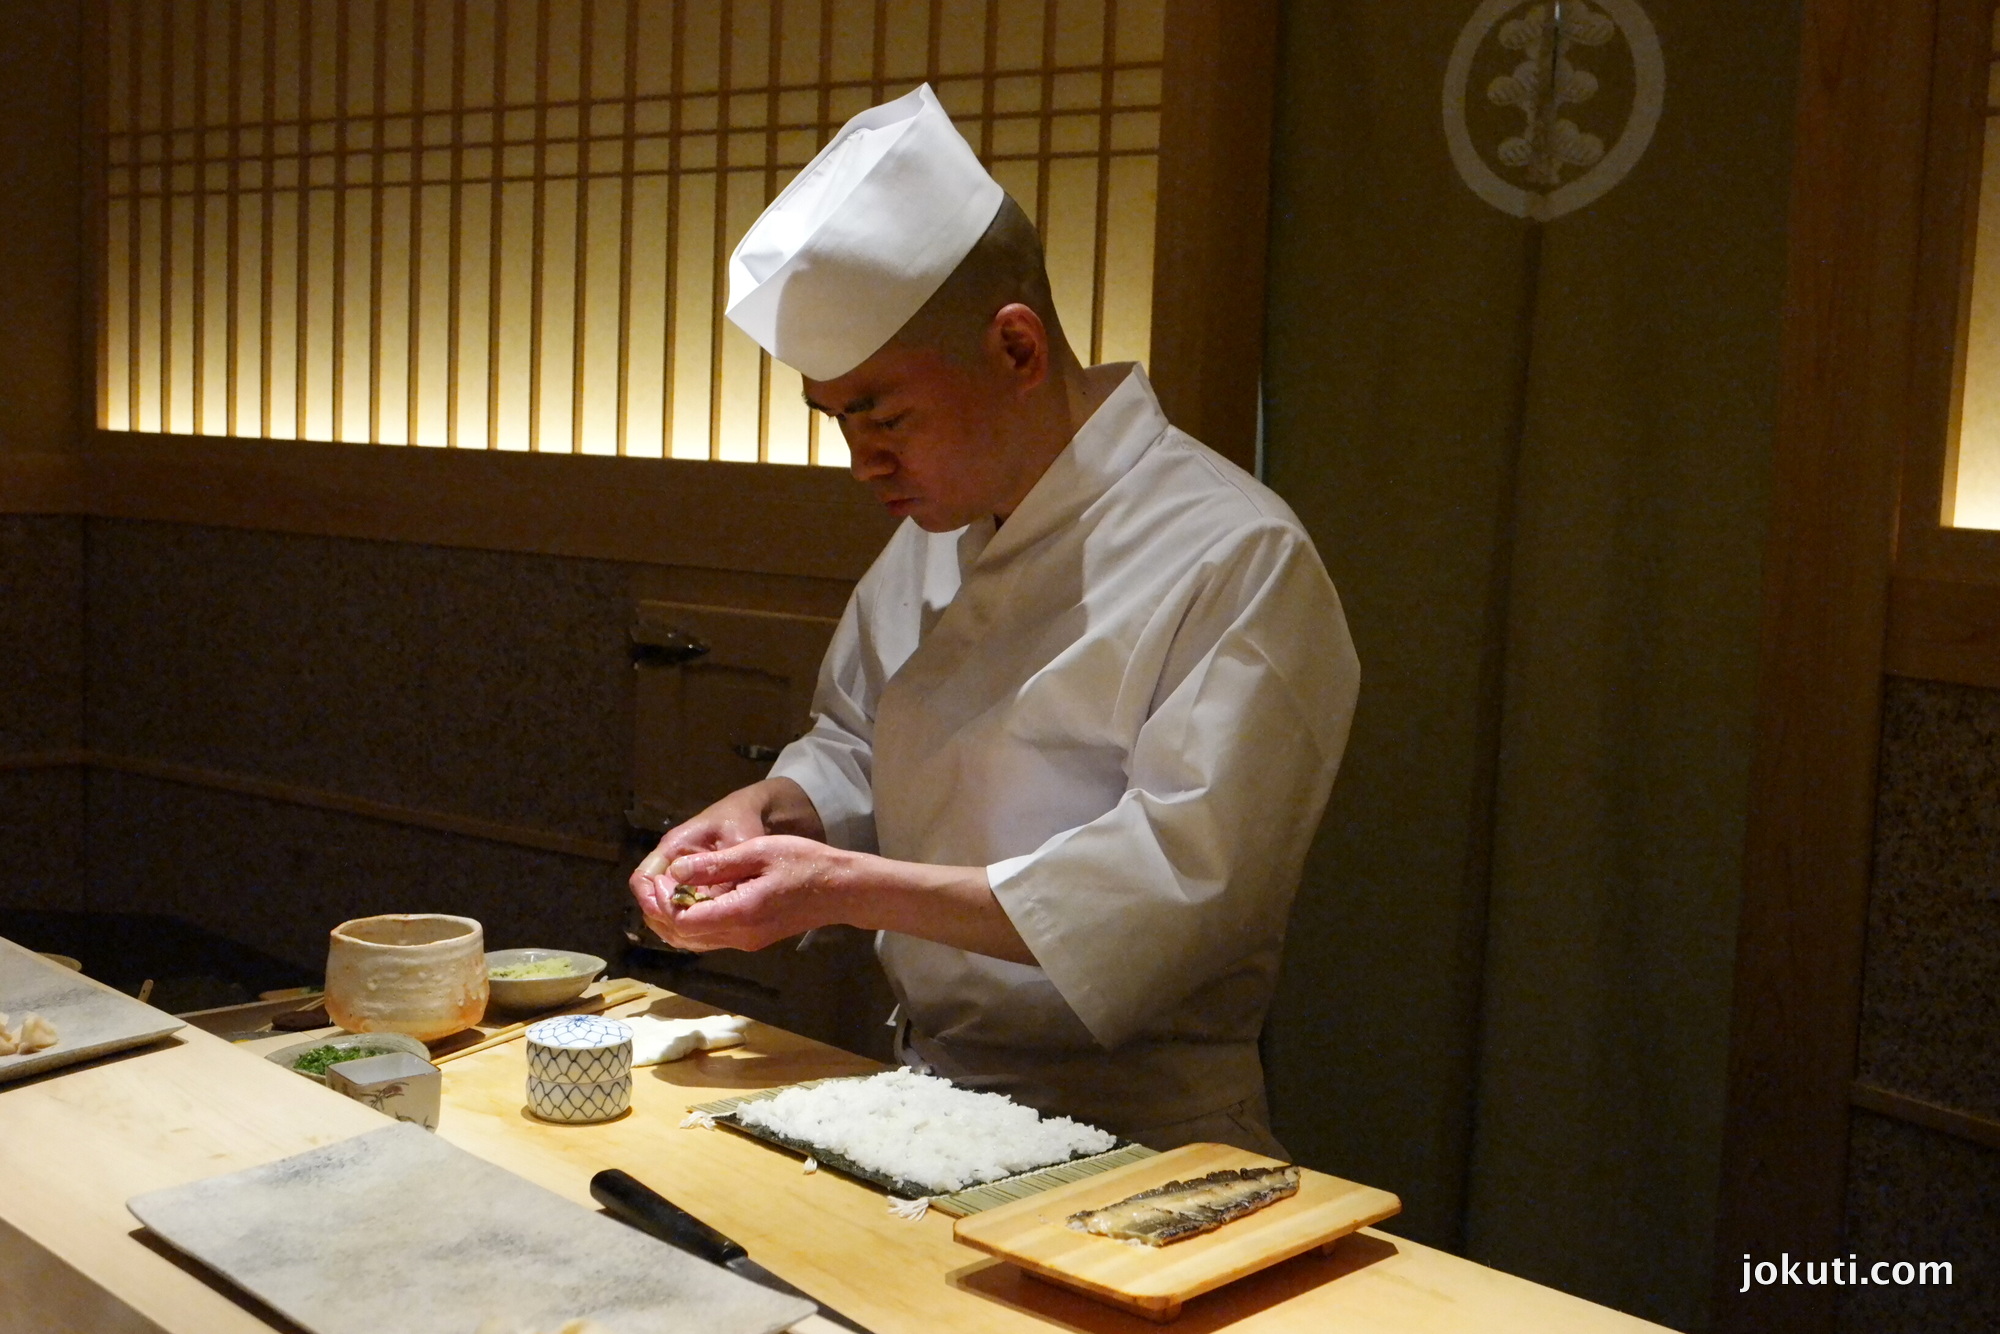 Futomaki (anago (tengeri angolna), tamago (tojás), garnéla, kanpyo (tökféle, szárítva kerül bele), uborka)<br />